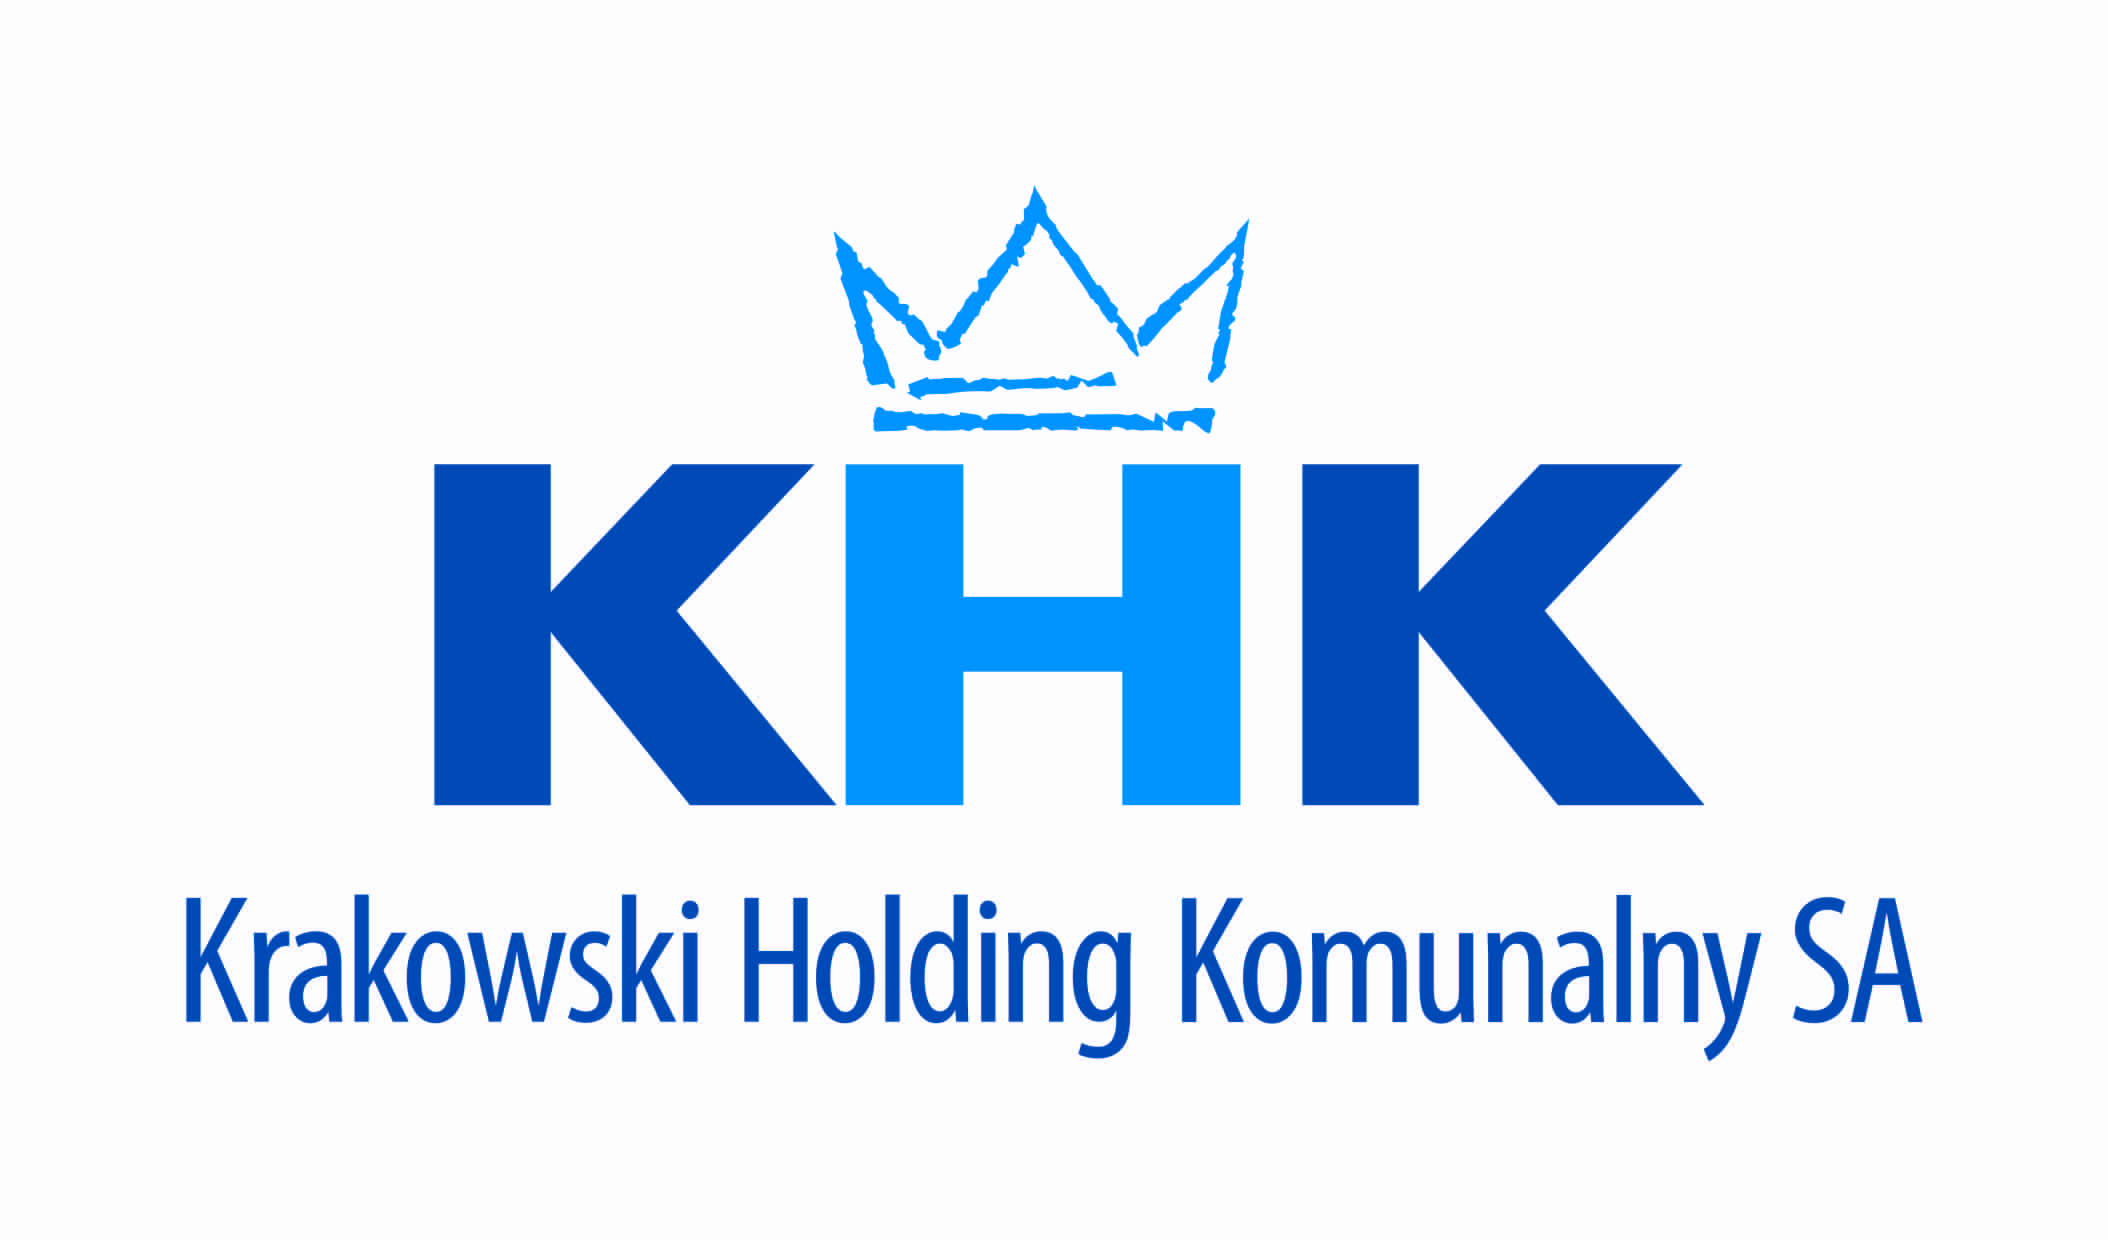 Krakowski holding komunalny